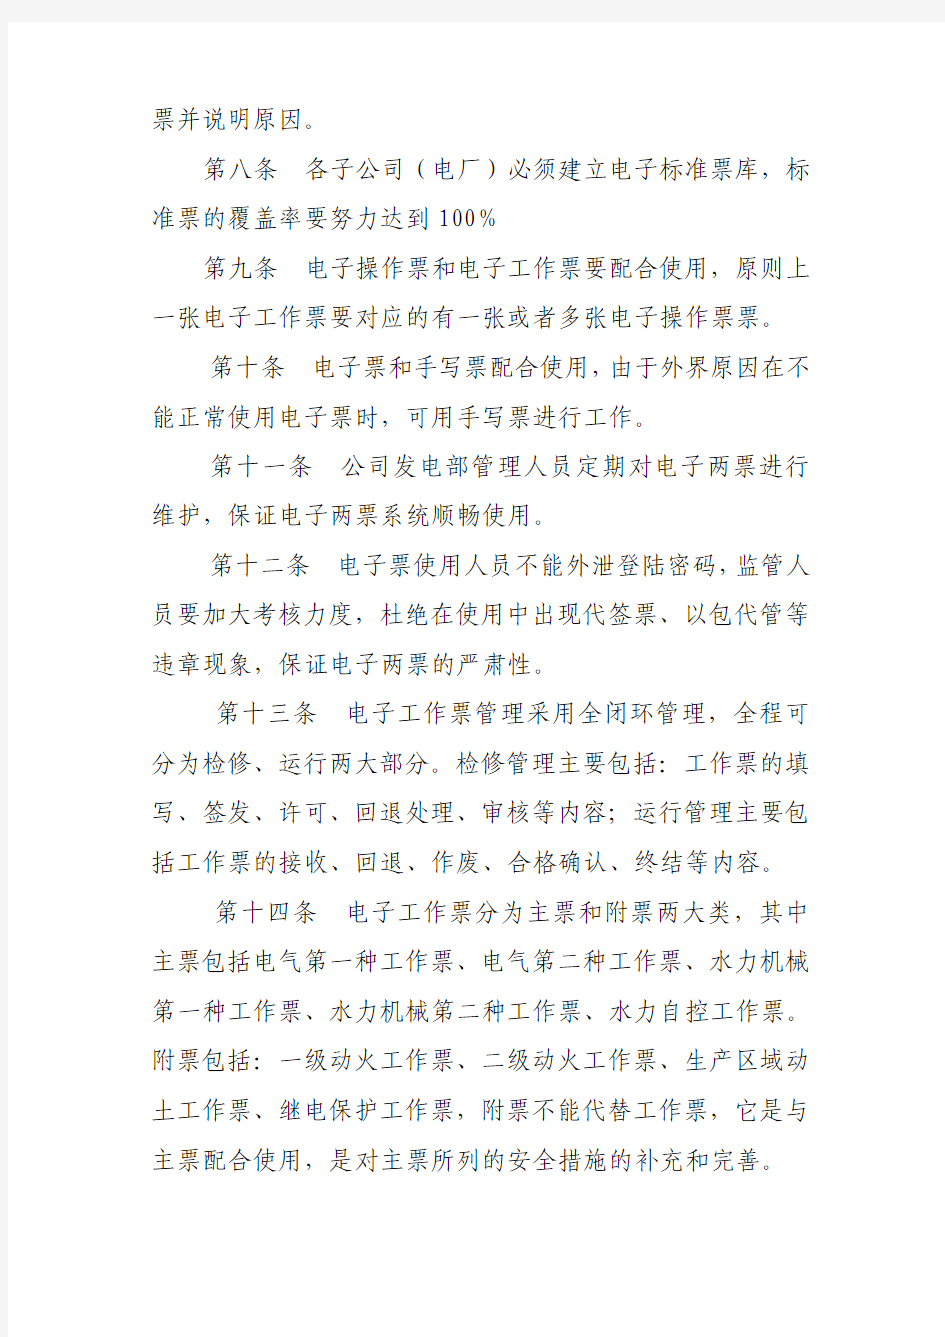 云南大唐国际电力有限公司电子两票管理办法